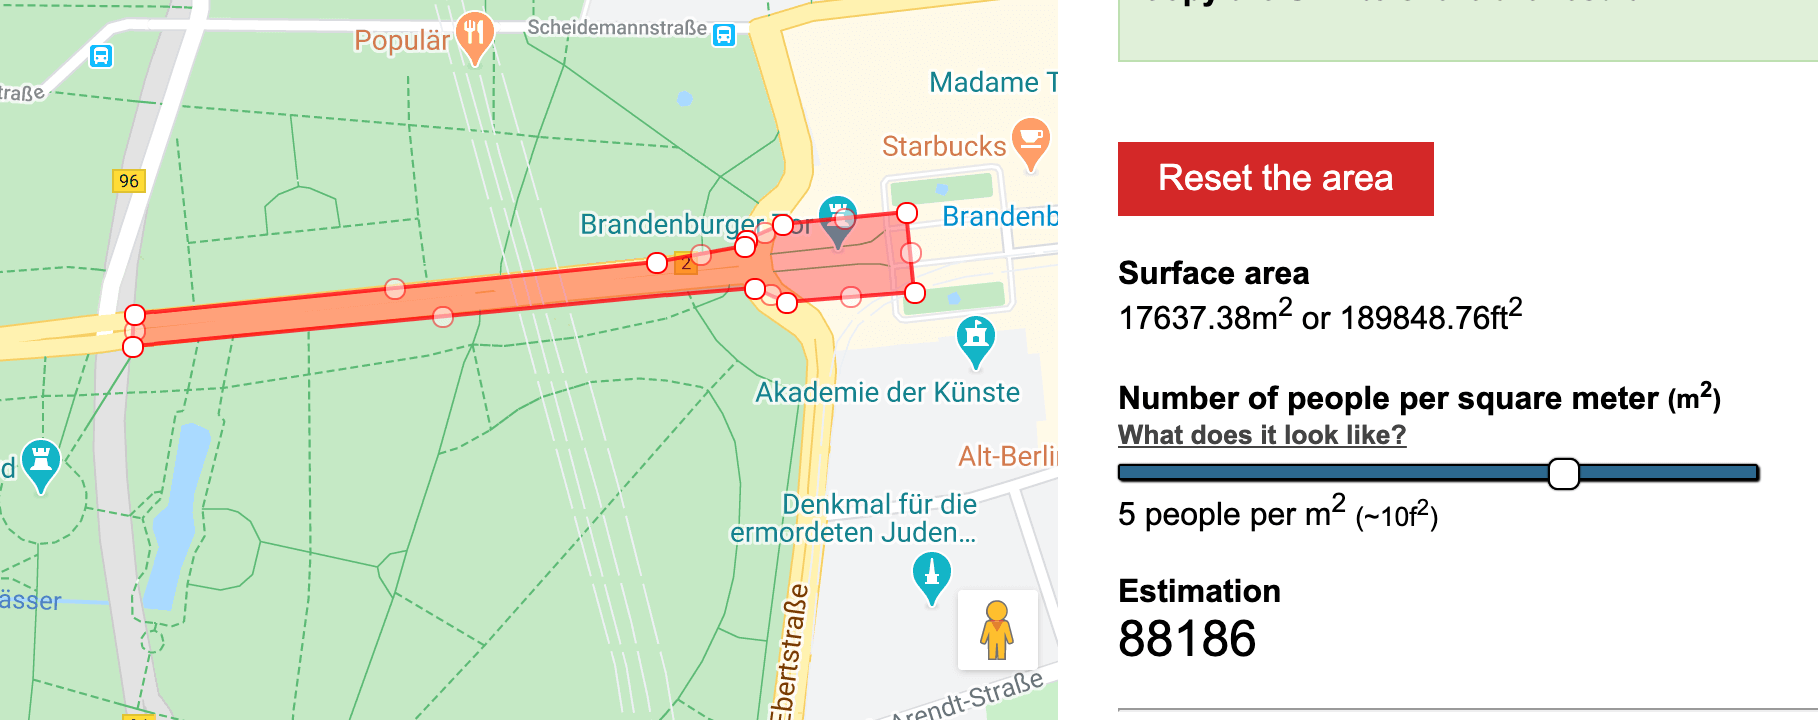 Dicht gedrängt hätten in dem Bereich um das Brandenburger Tor rund 88.200 Menschen Platz gehabt, wie das Tool „Mapchecking“ zeigt. (Quelle: Mapchecking, Screenshot: CORRECTIV)